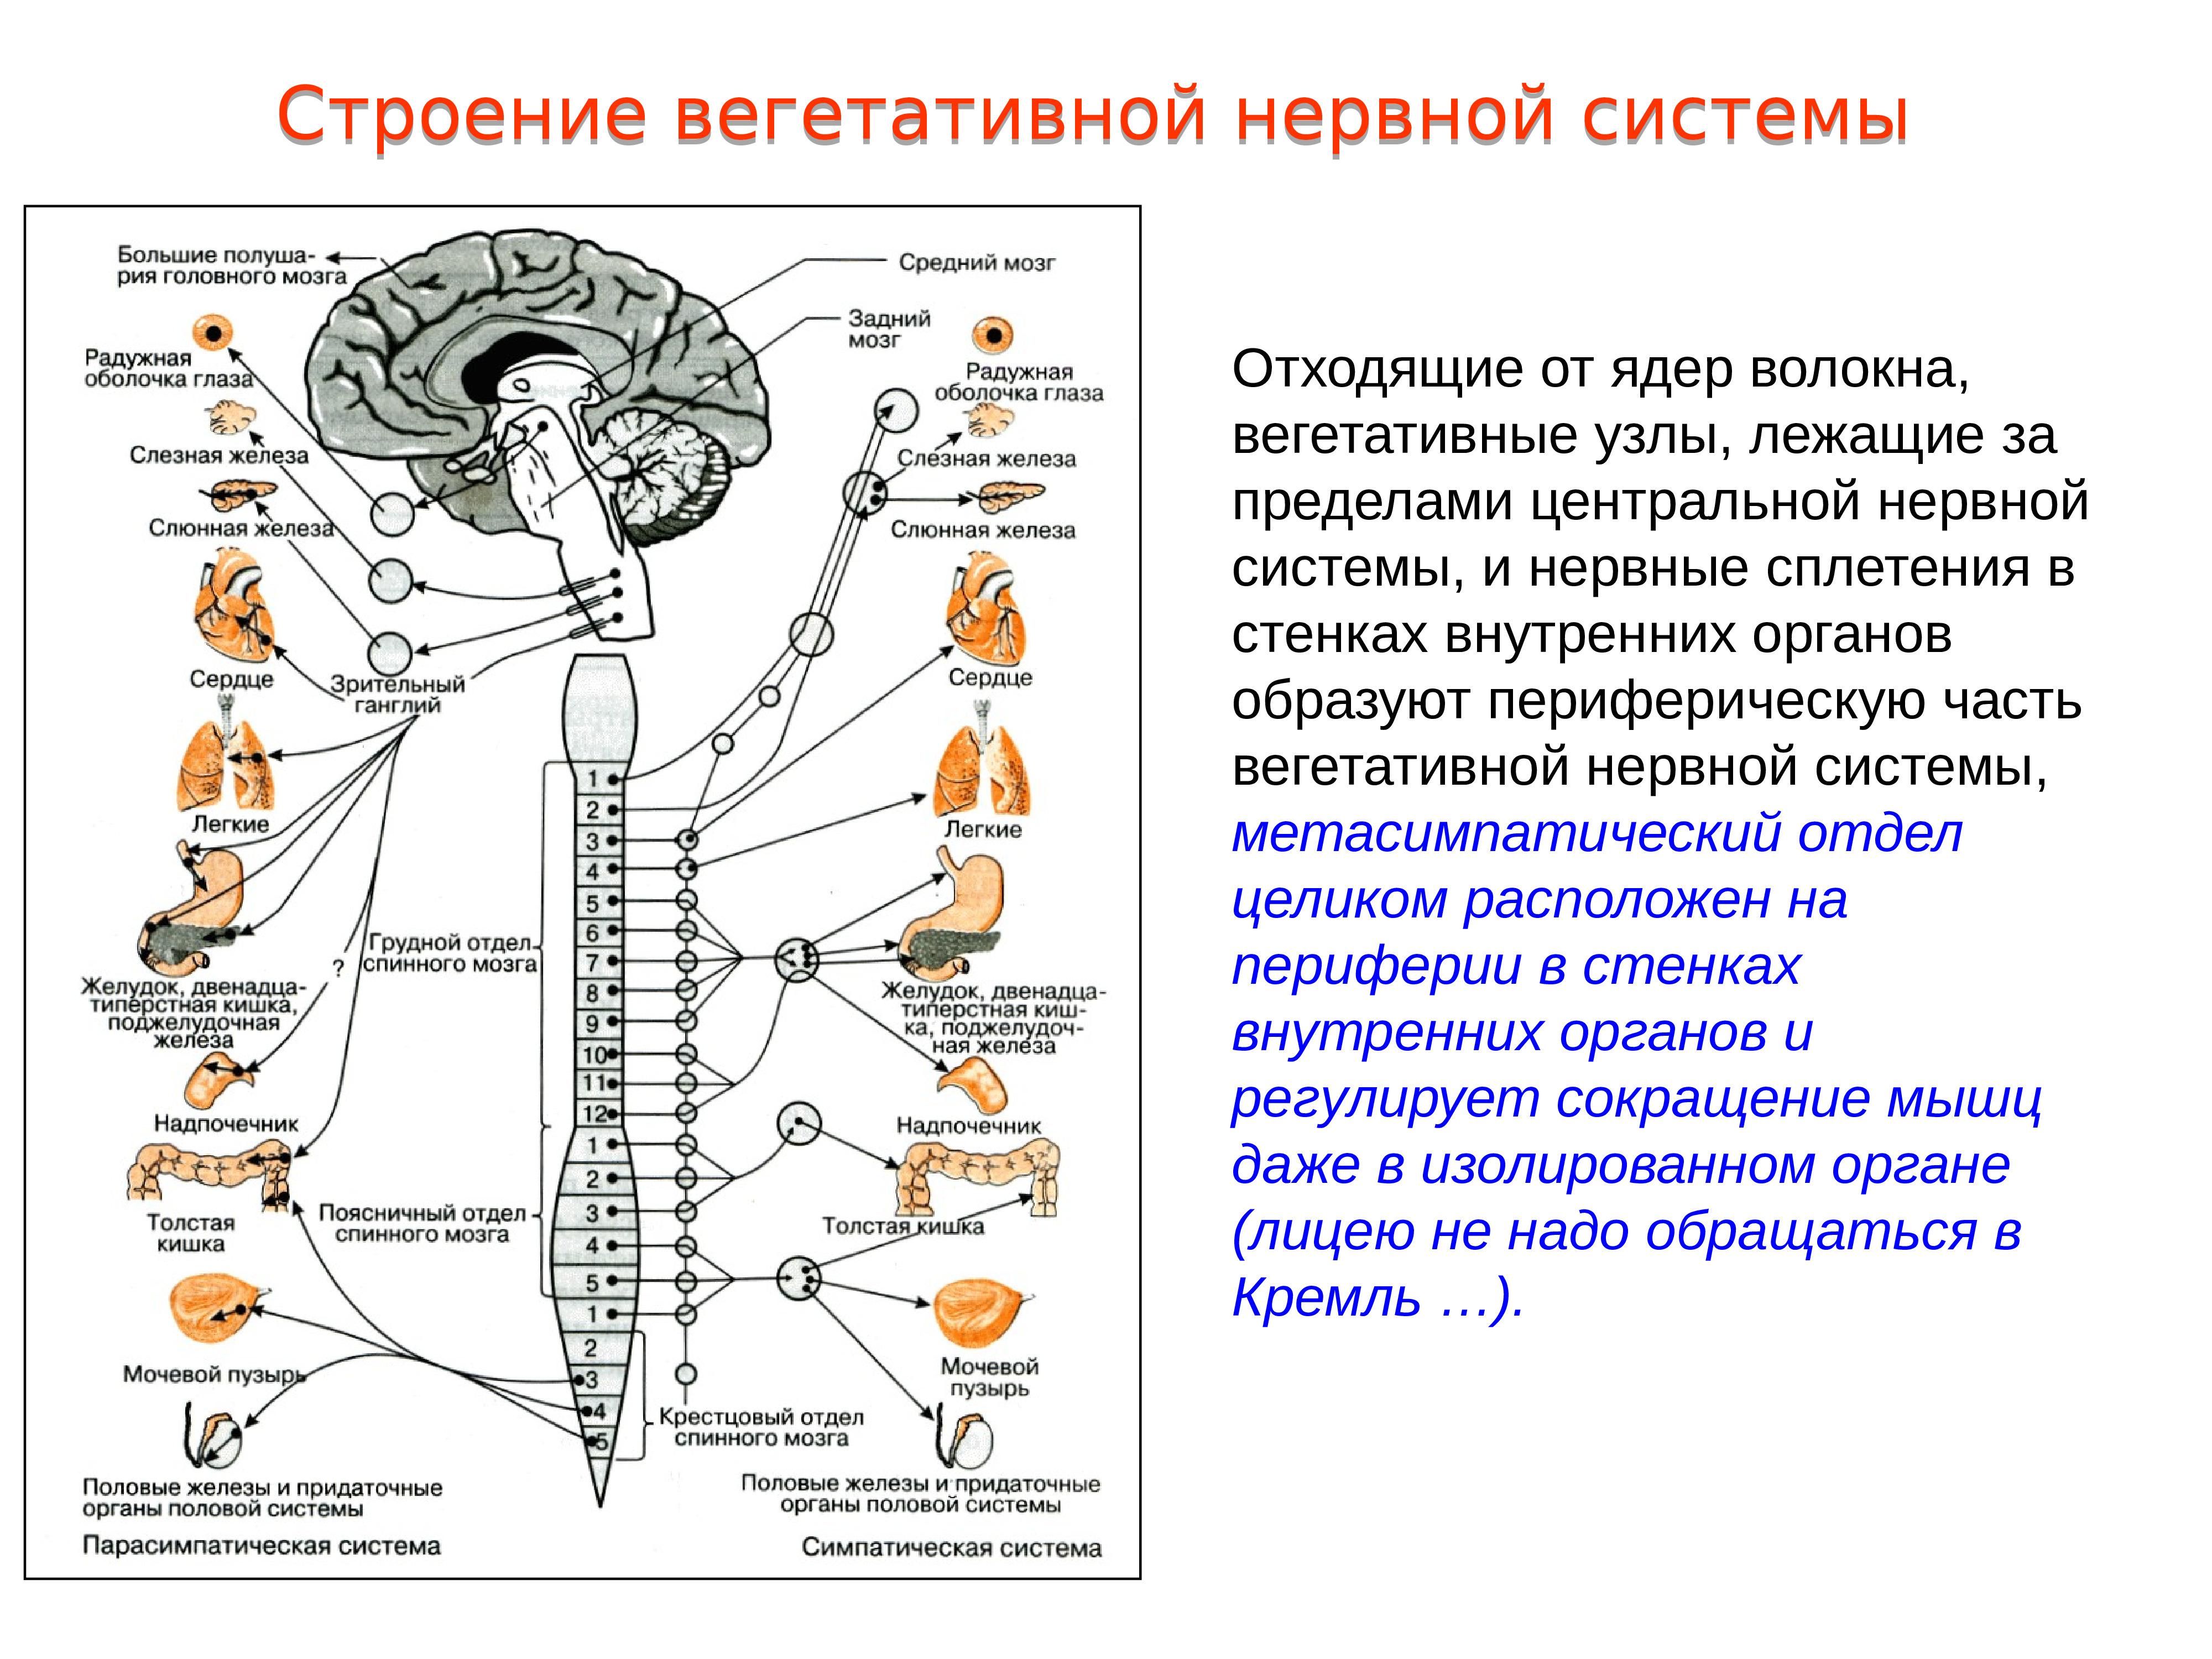 Головной мозг и нервы образуют. Строение и функции спинного мозга вегетативная нервная система. Вегетативная автономная нервная система функции. Иннервация органов вегетативной нервной системы. Автономная нервная система симпатическая и парасимпатическая.